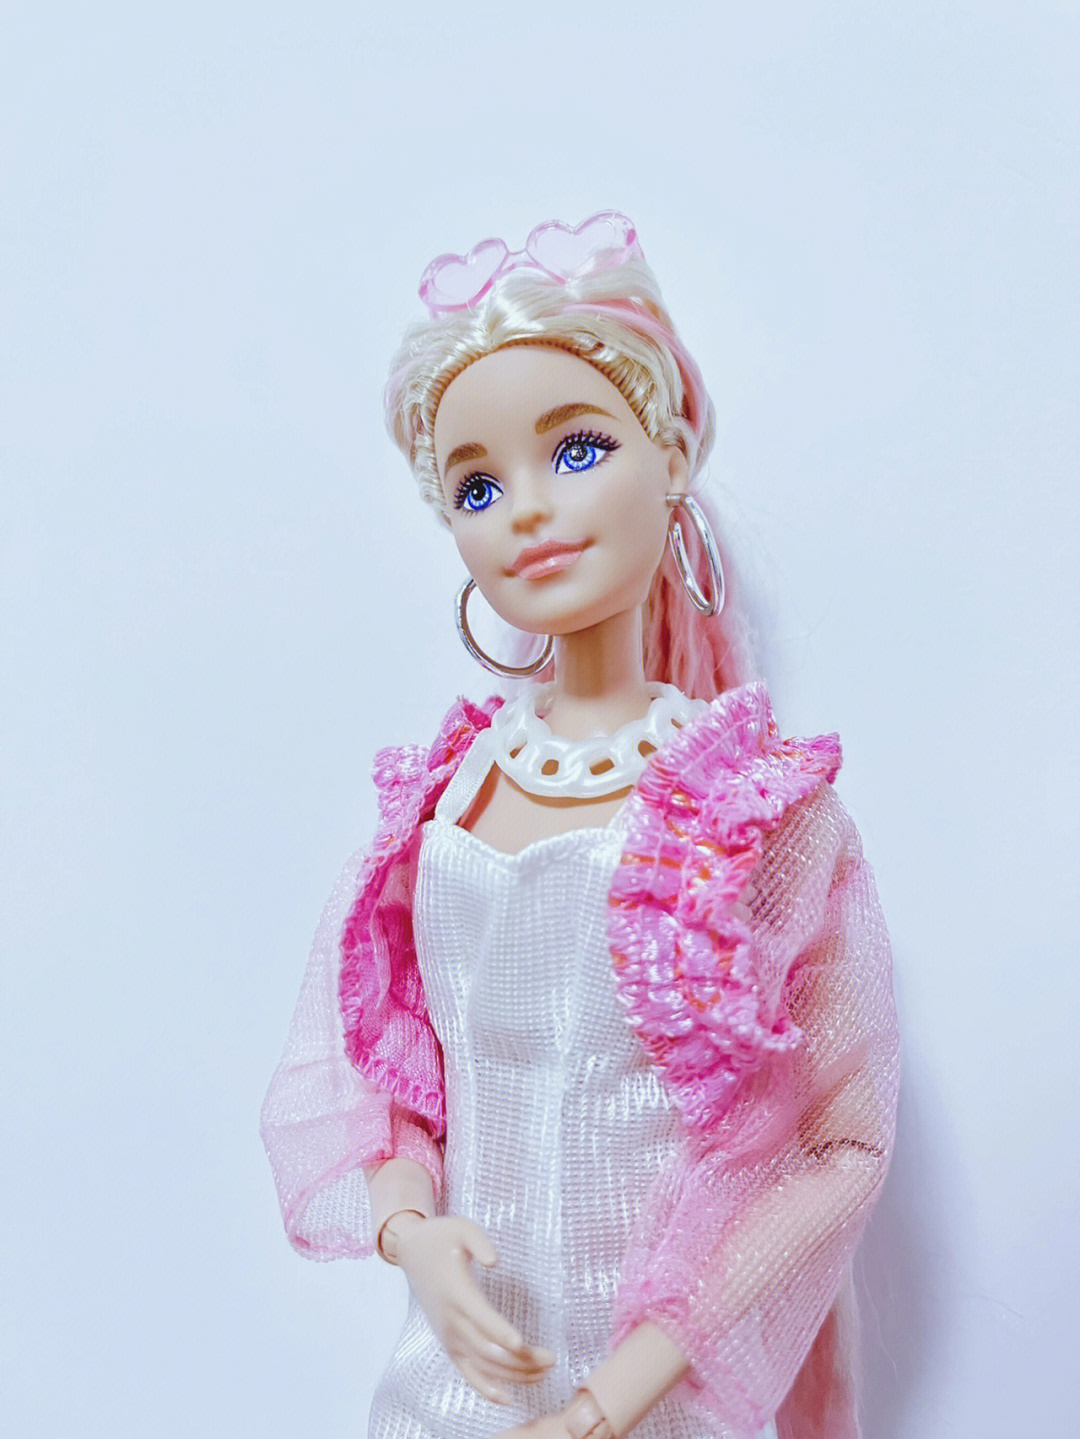 芭比娃娃#芭比娃娃衣服制作#芭比#barbie#我的玩具分享